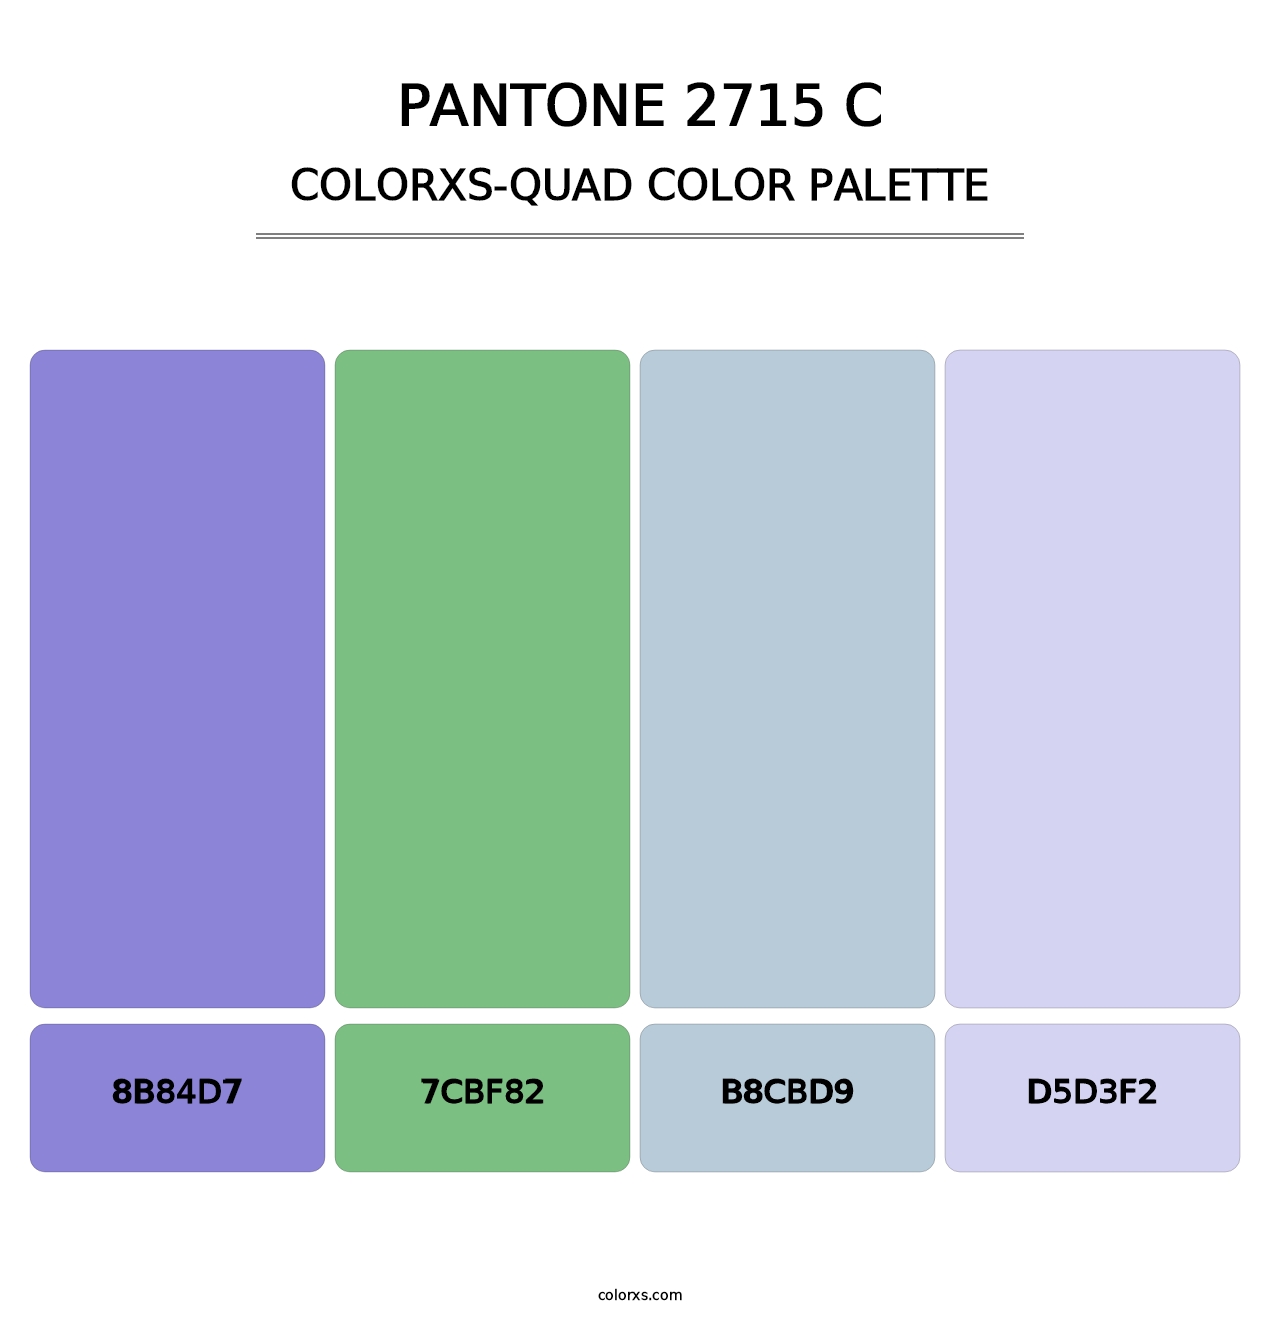 PANTONE 2715 C - Colorxs Quad Palette